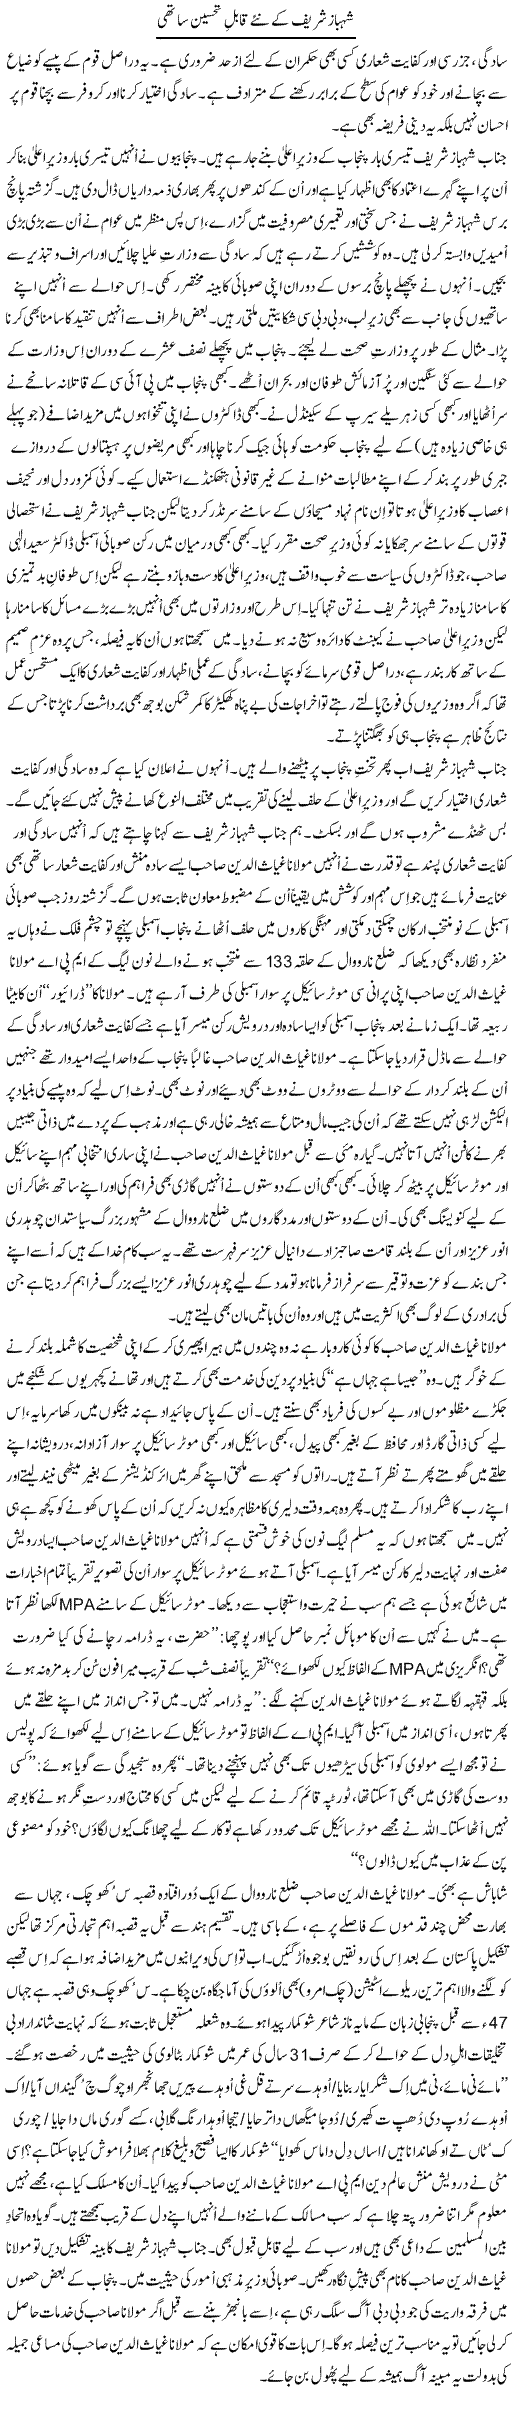 Shahbaz Sharif K Nae Qabil e Tehseen Sathi | Tanveer Qaisar Shahid | Daily Urdu Columns